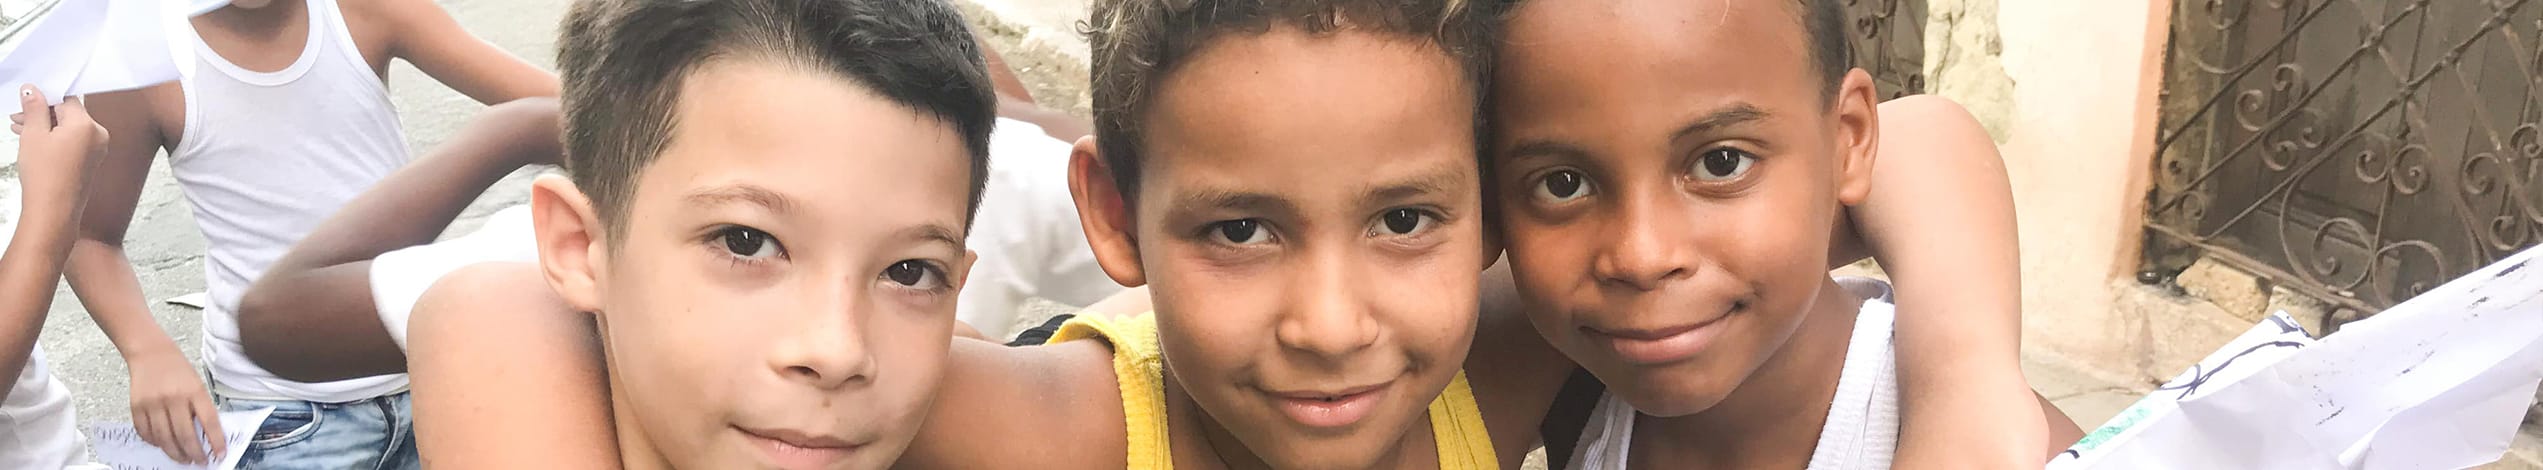 Børn i Havanas gader